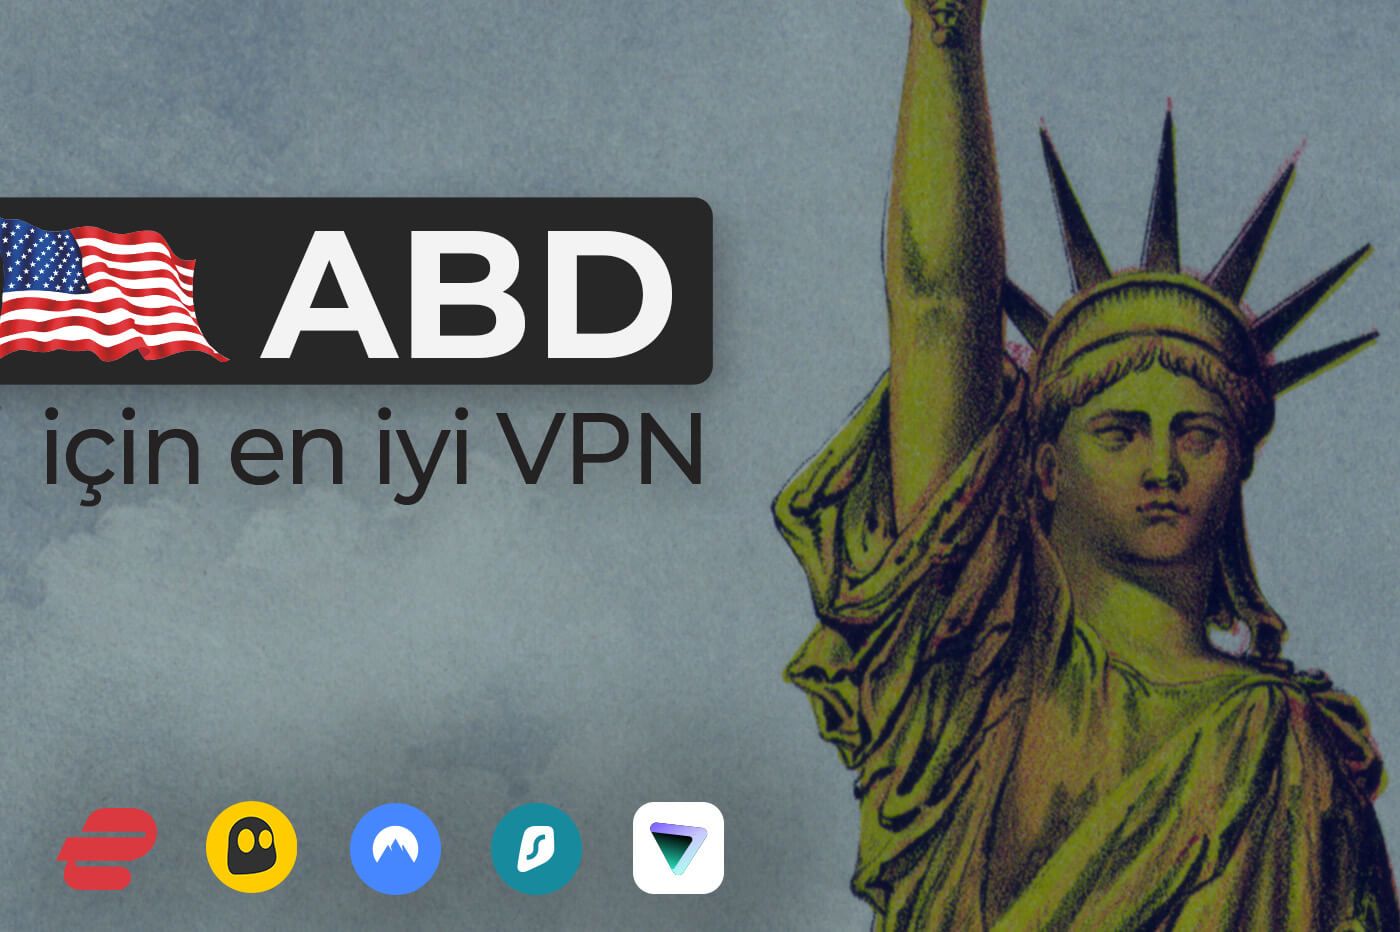 ABD için en iyi VPN